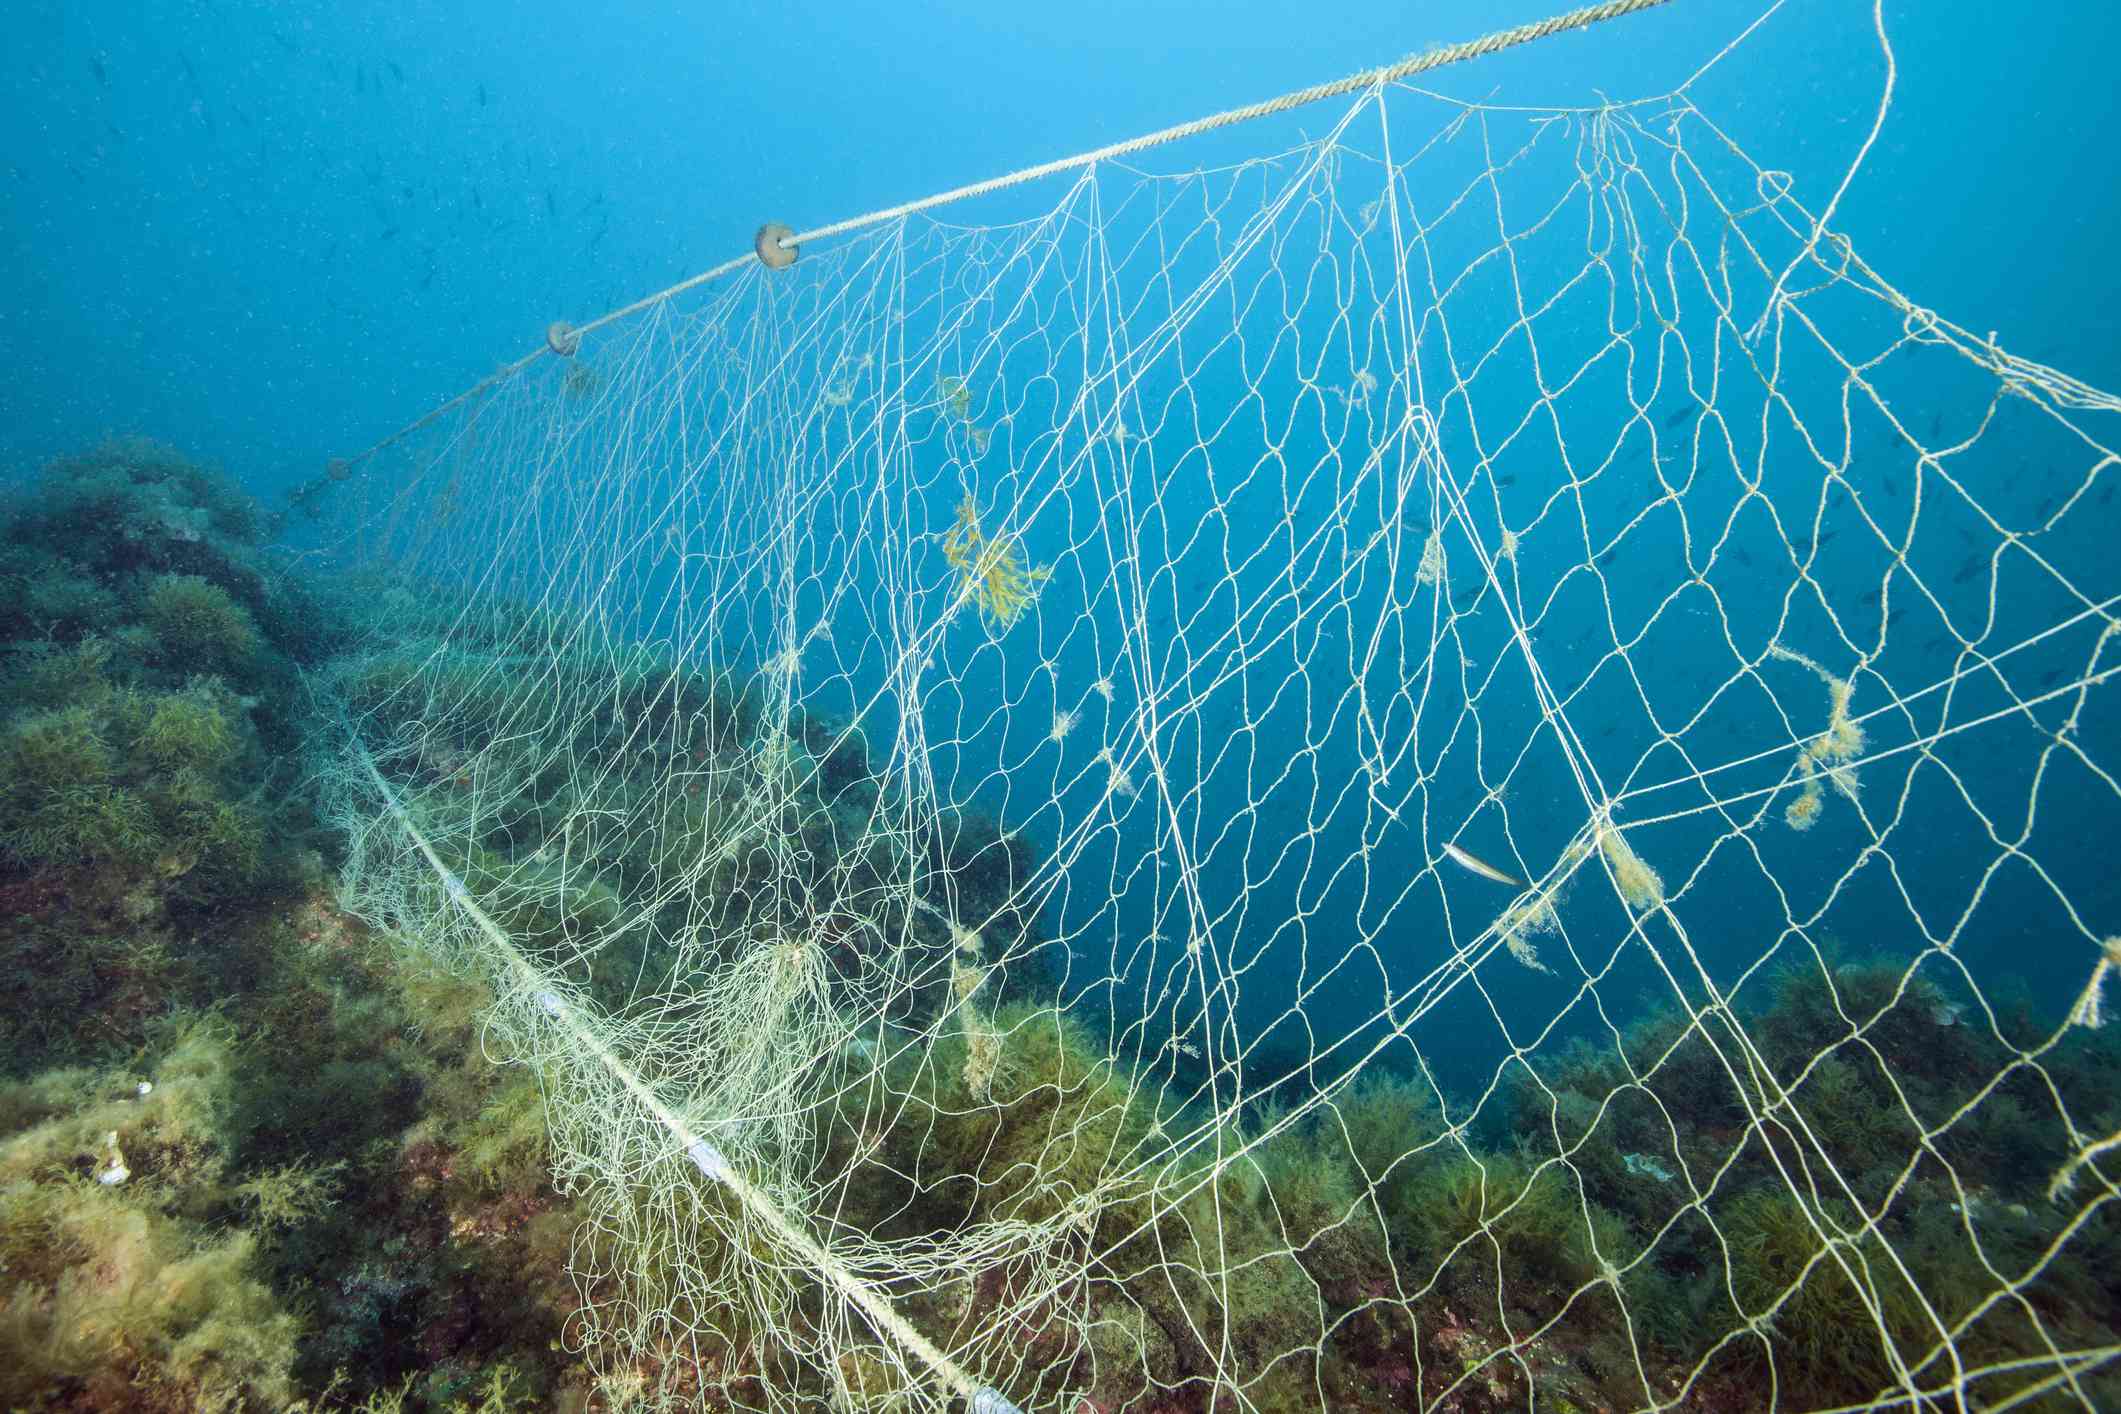 Red de pesca perdida sobre el arrecife, Mar Mediterráneo, Cap de Creus, Costa Brava, España